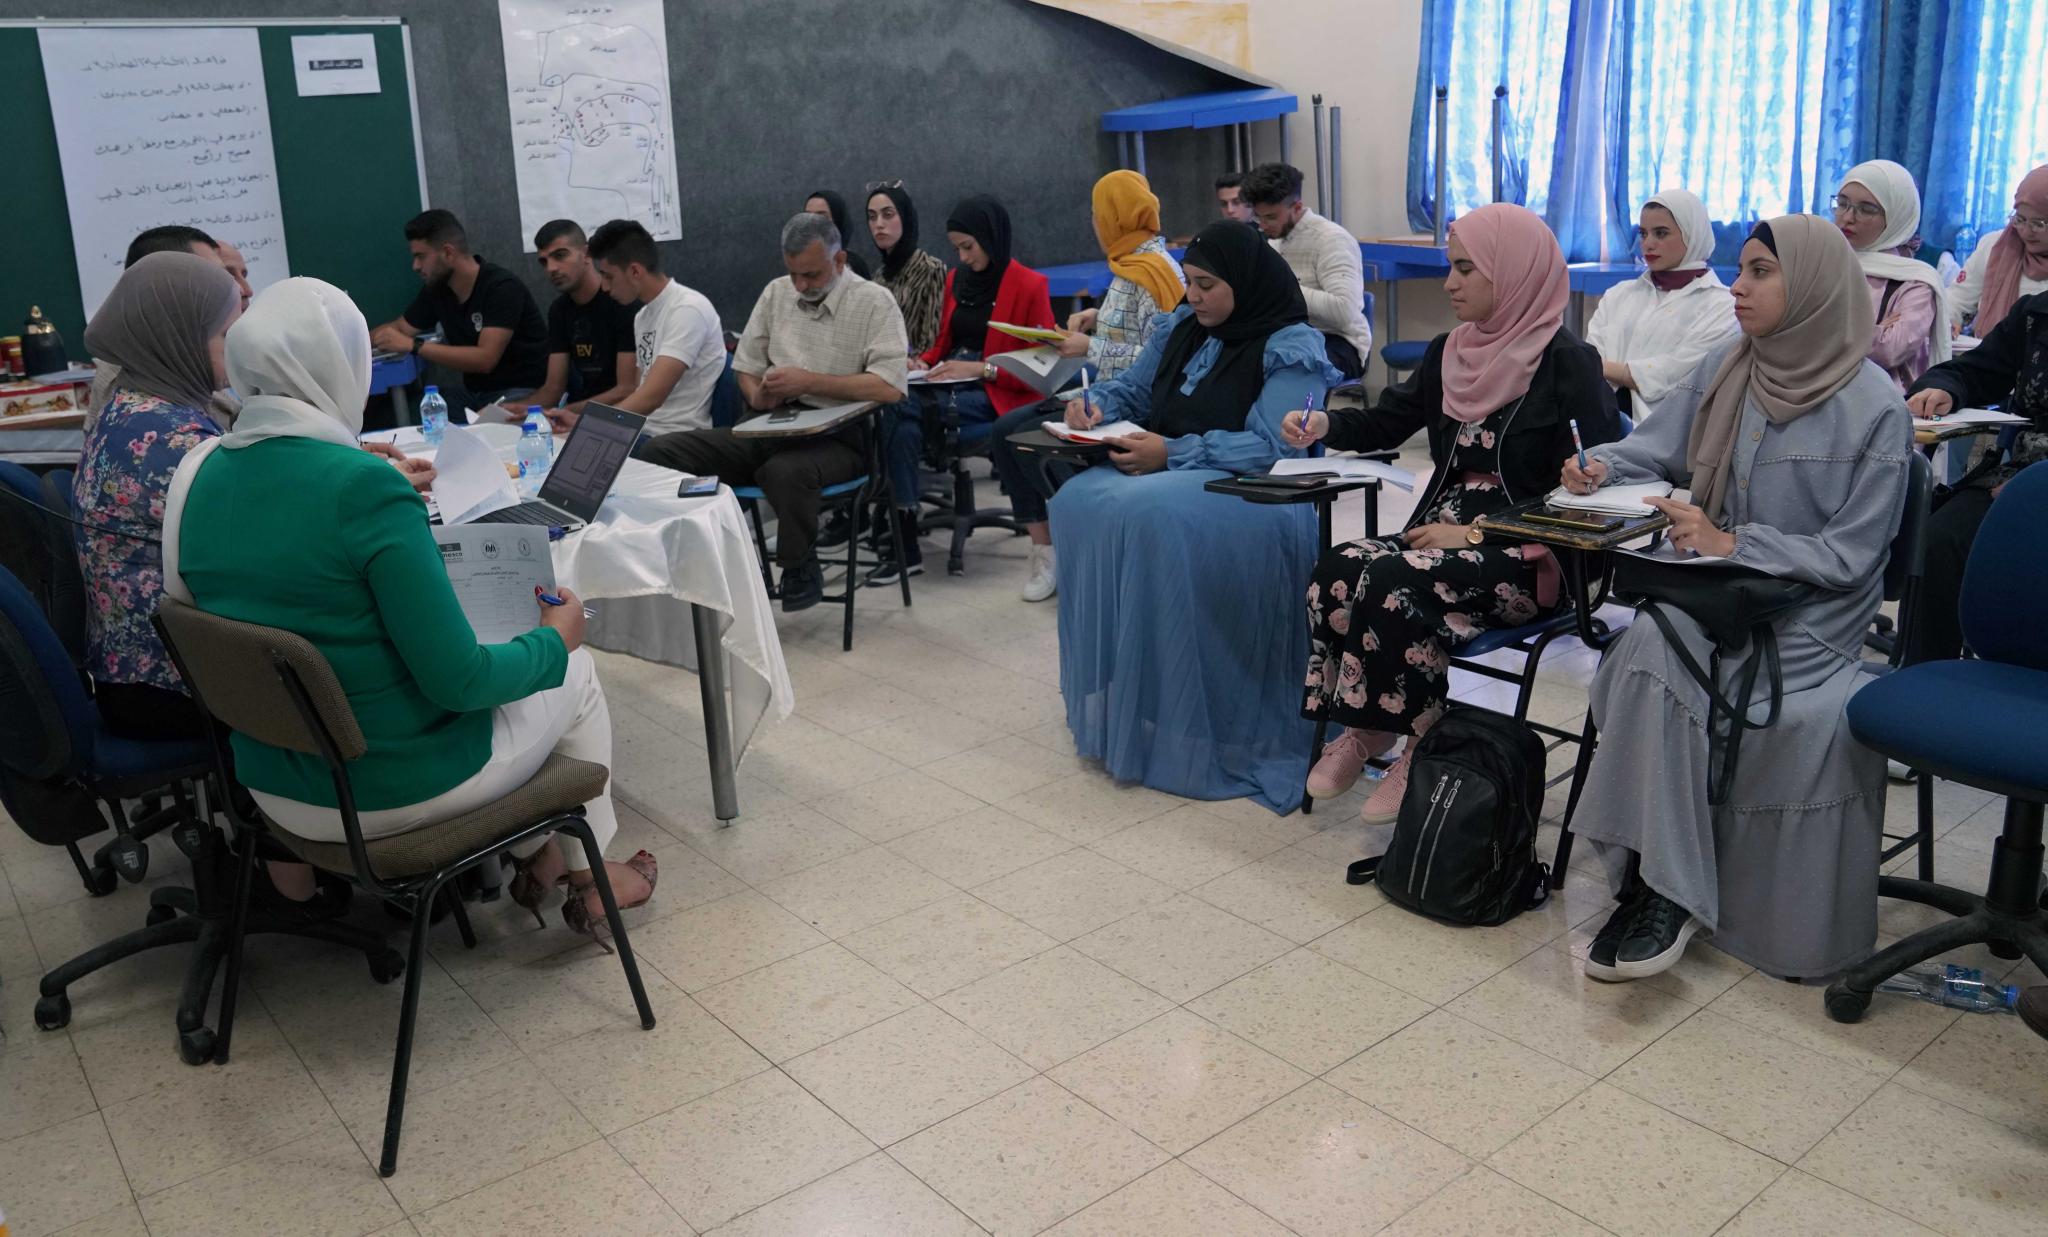 الجامعة تنظم ورشة عمل لطلبة قسم اللغة العربية والإعلام حول المحتوى الإعلامي المراعي للنوع الاجتماعي